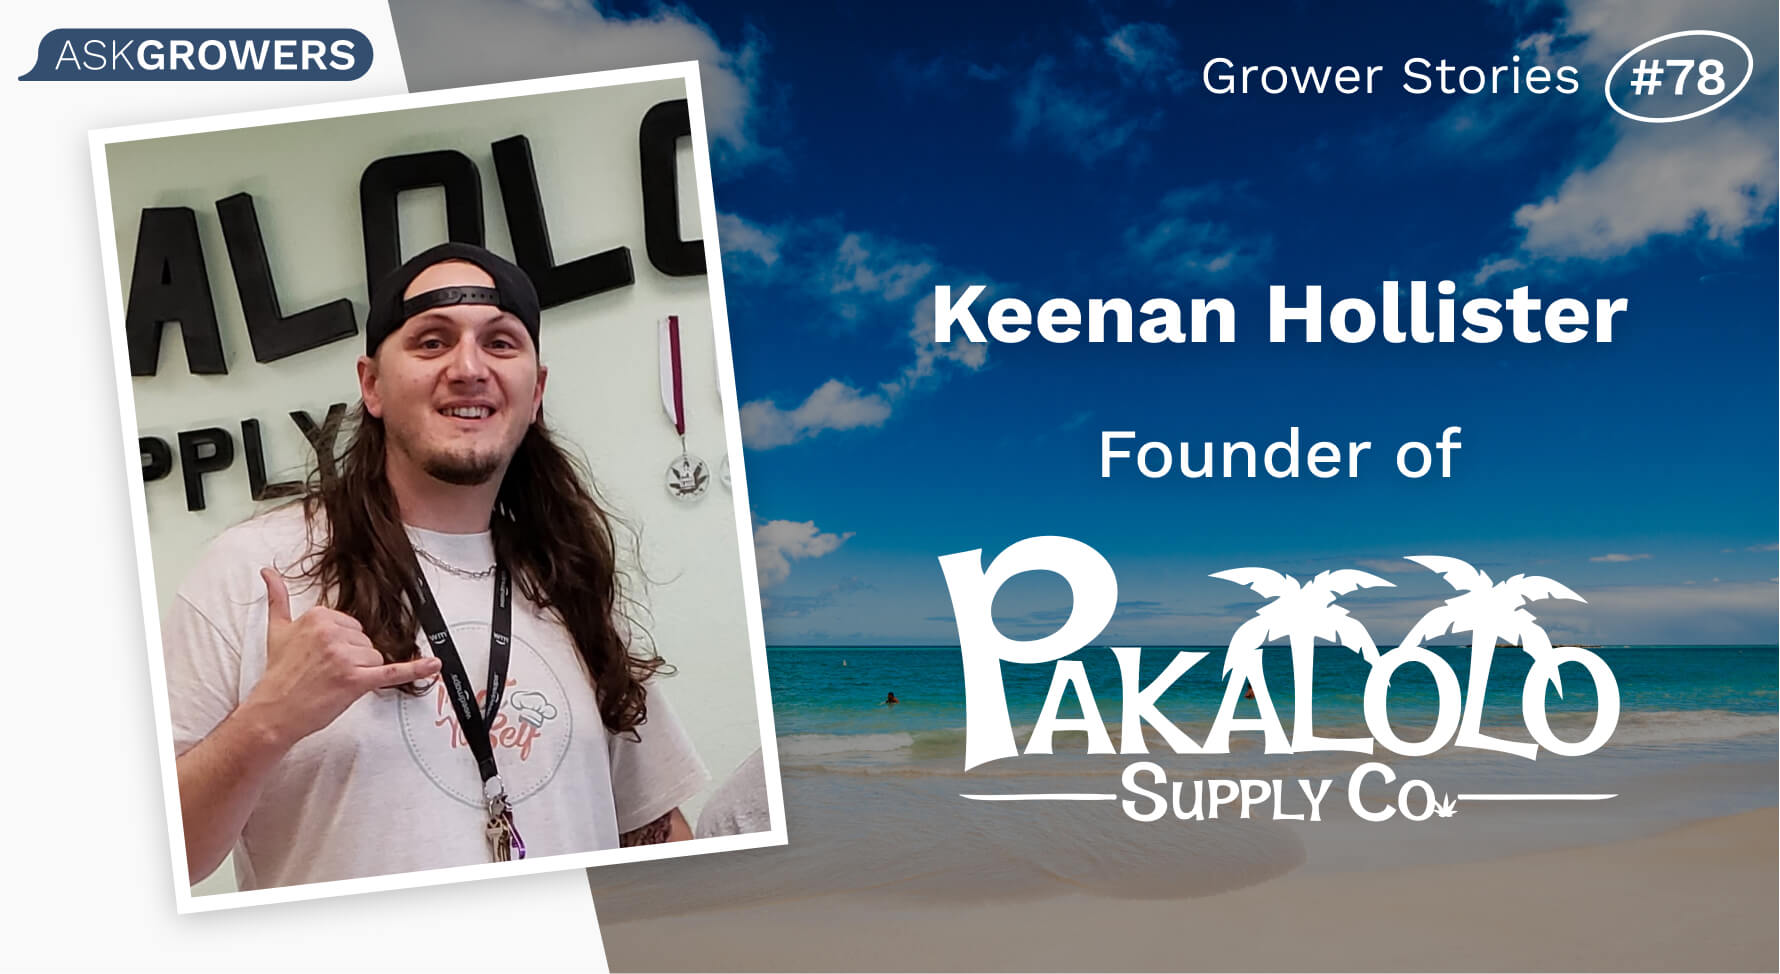 Grower Stories #78: Keenan Hollister